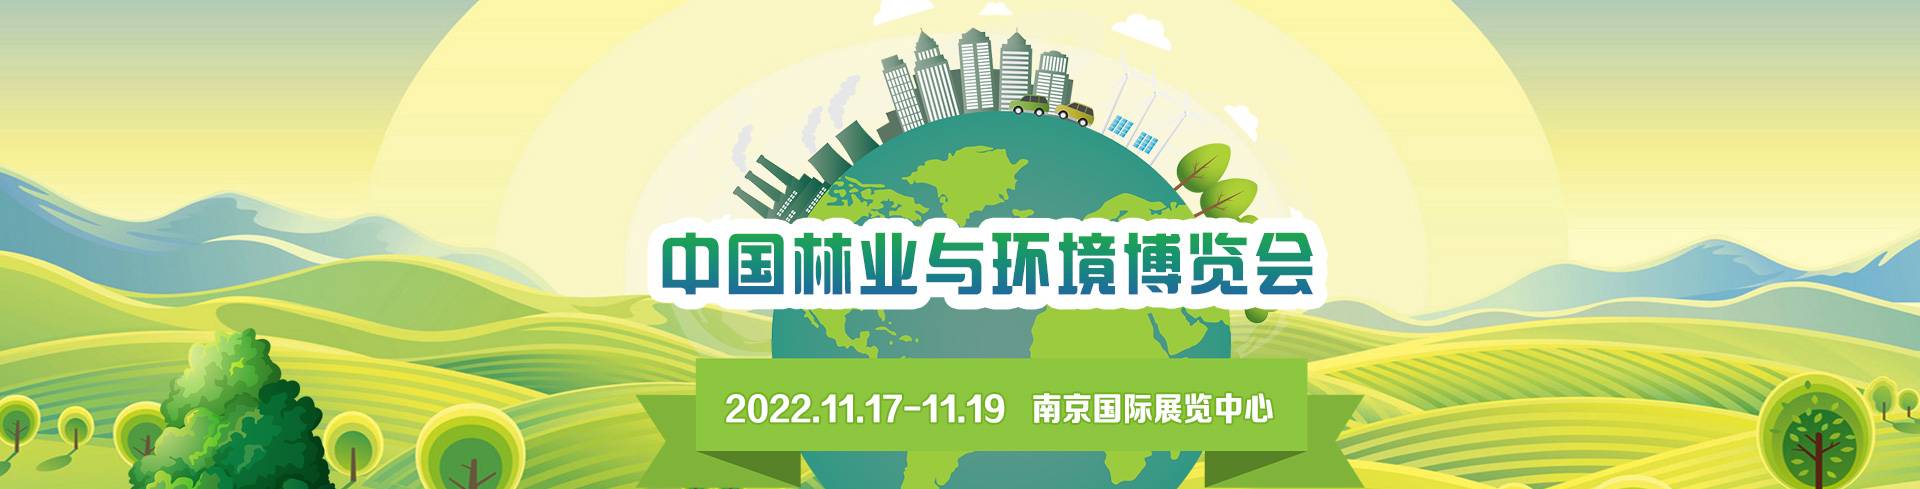 2022中国林业与环境博览会 暨首届中国林业与环境保护高峰论坛 ...